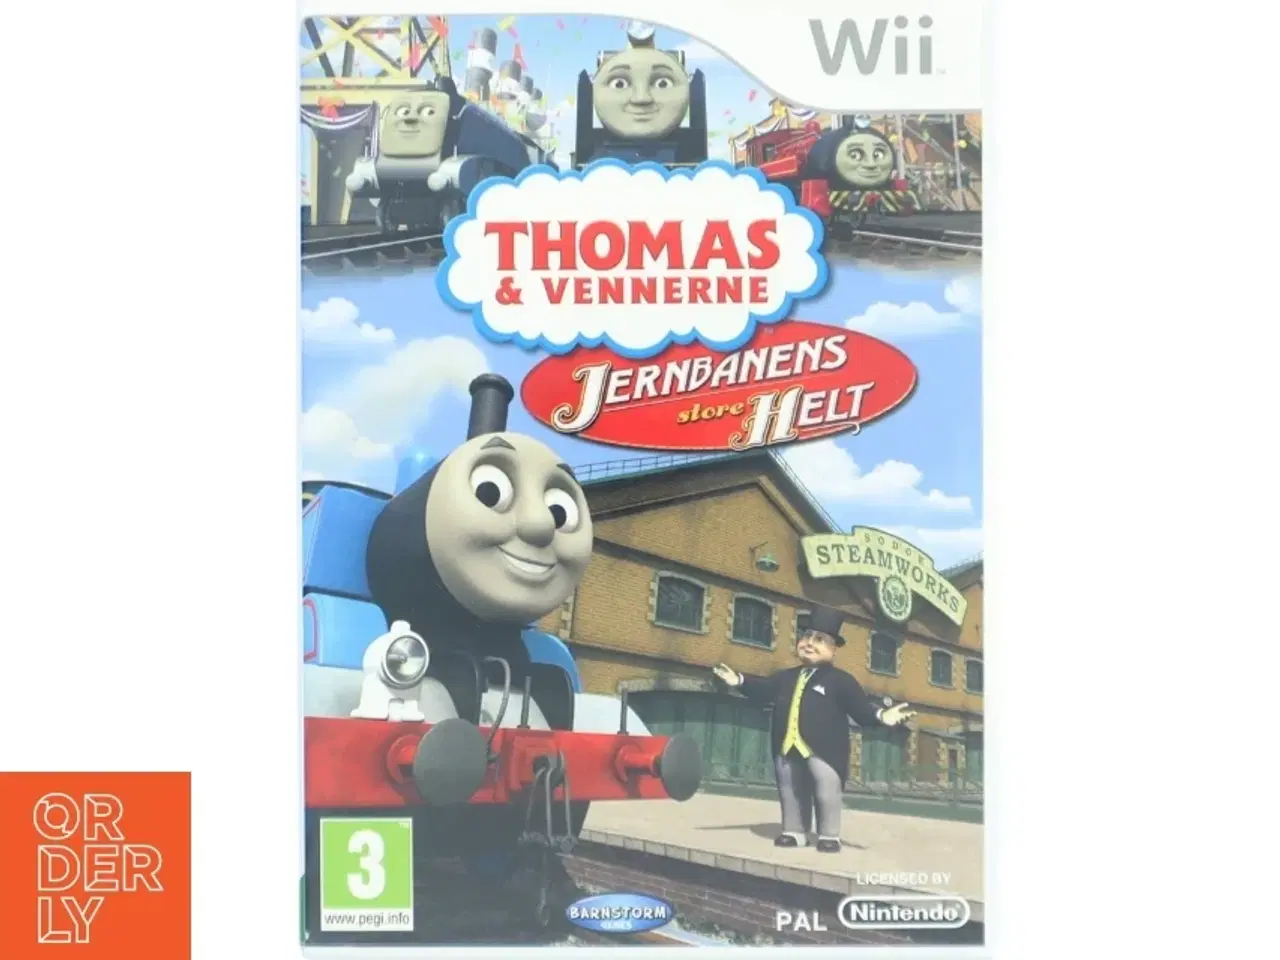 Billede 1 - Thomas & Vennerne: Jernbanens store helt Wii spil fra Barnstorm Games